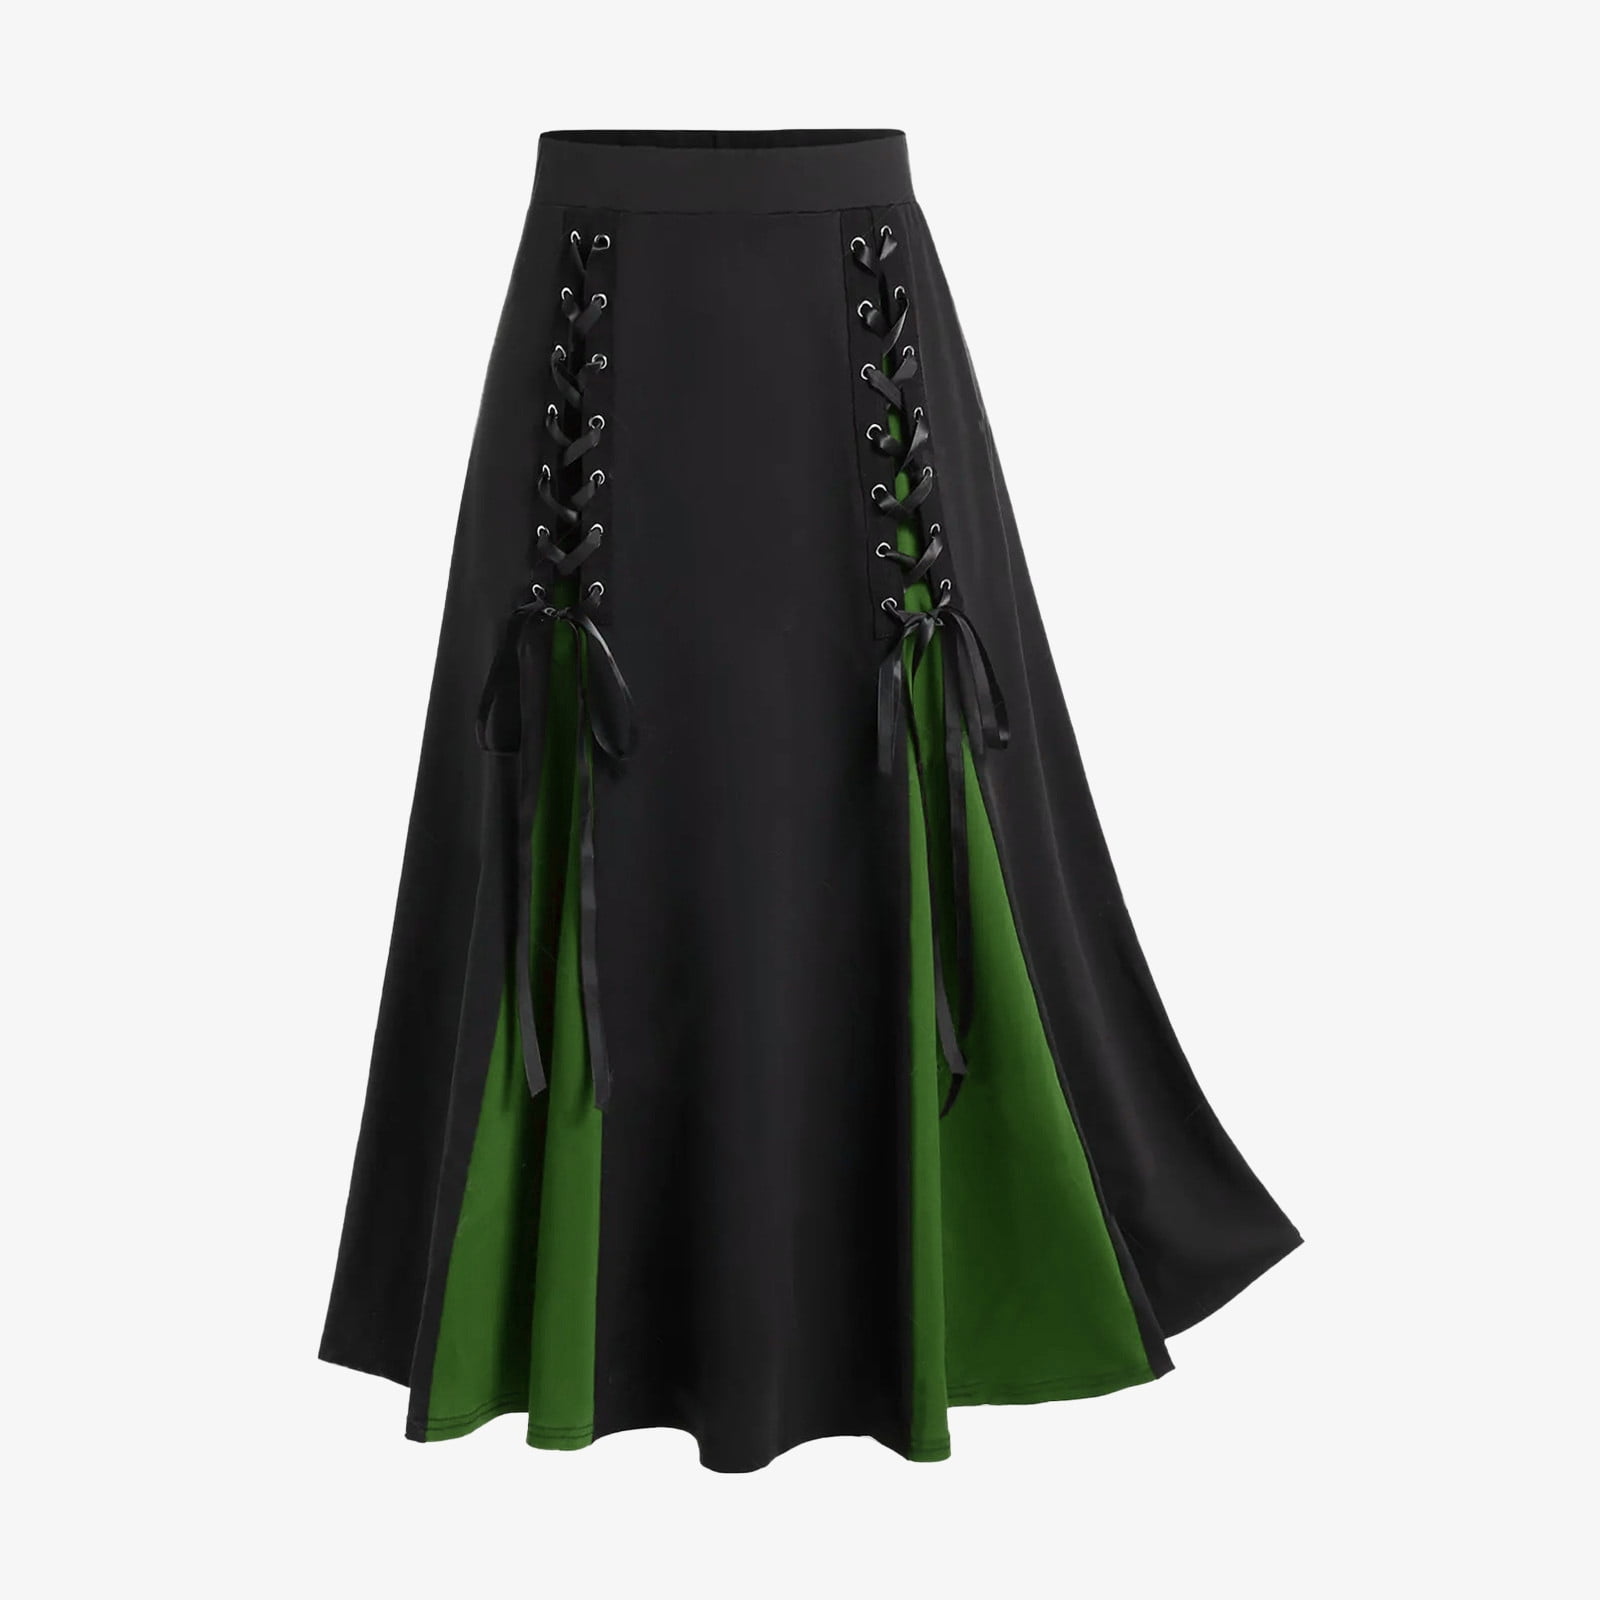 Black Maxi Skirt, Long Skirt, High Waisted Skirt, Plus Size Clothing,  Steampunk Skirt, Women Skirt, Boho Skirt, Cocktail Skirt, Gothic Skirt 